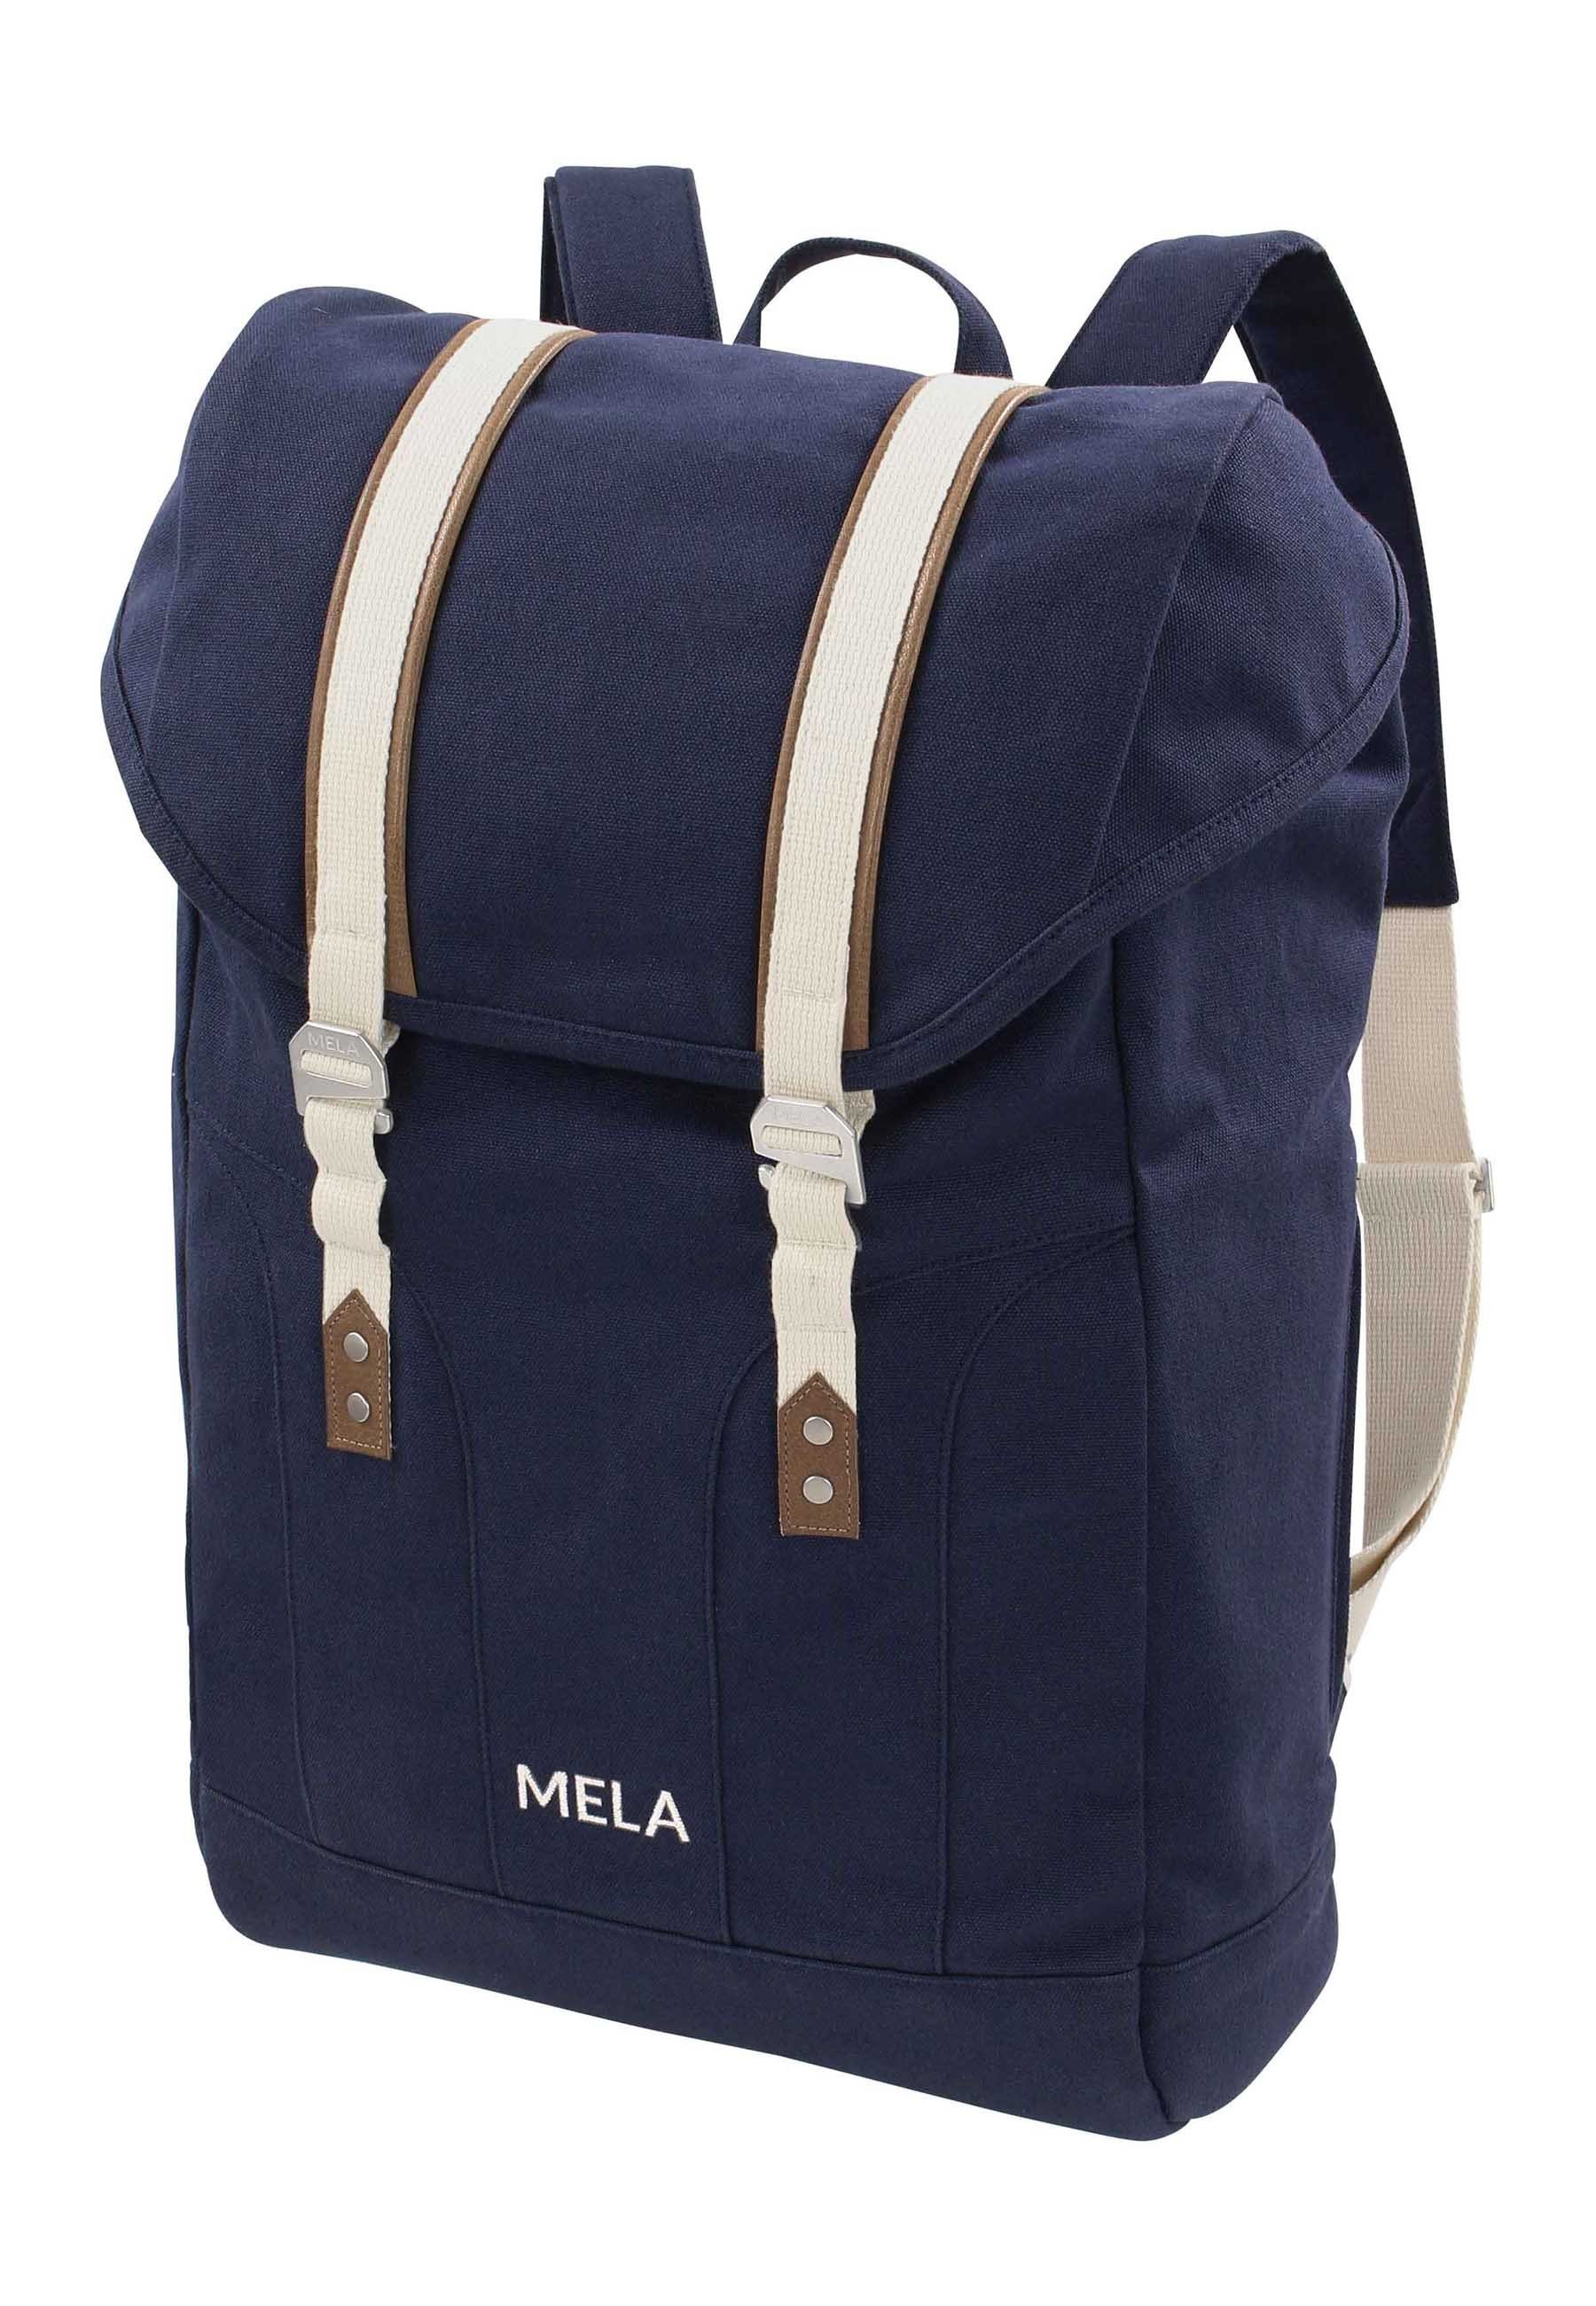 MELA Rucksack Rucksack MELA x für Kleinteile Kosmetika 15" bis blau ca. Laptopfach abgetrennt 29cm) & Schlüssel, extra - (Maße gepolstert V, Handy Seitlich und 41cm verstecktes Reißverschlussfach und wie